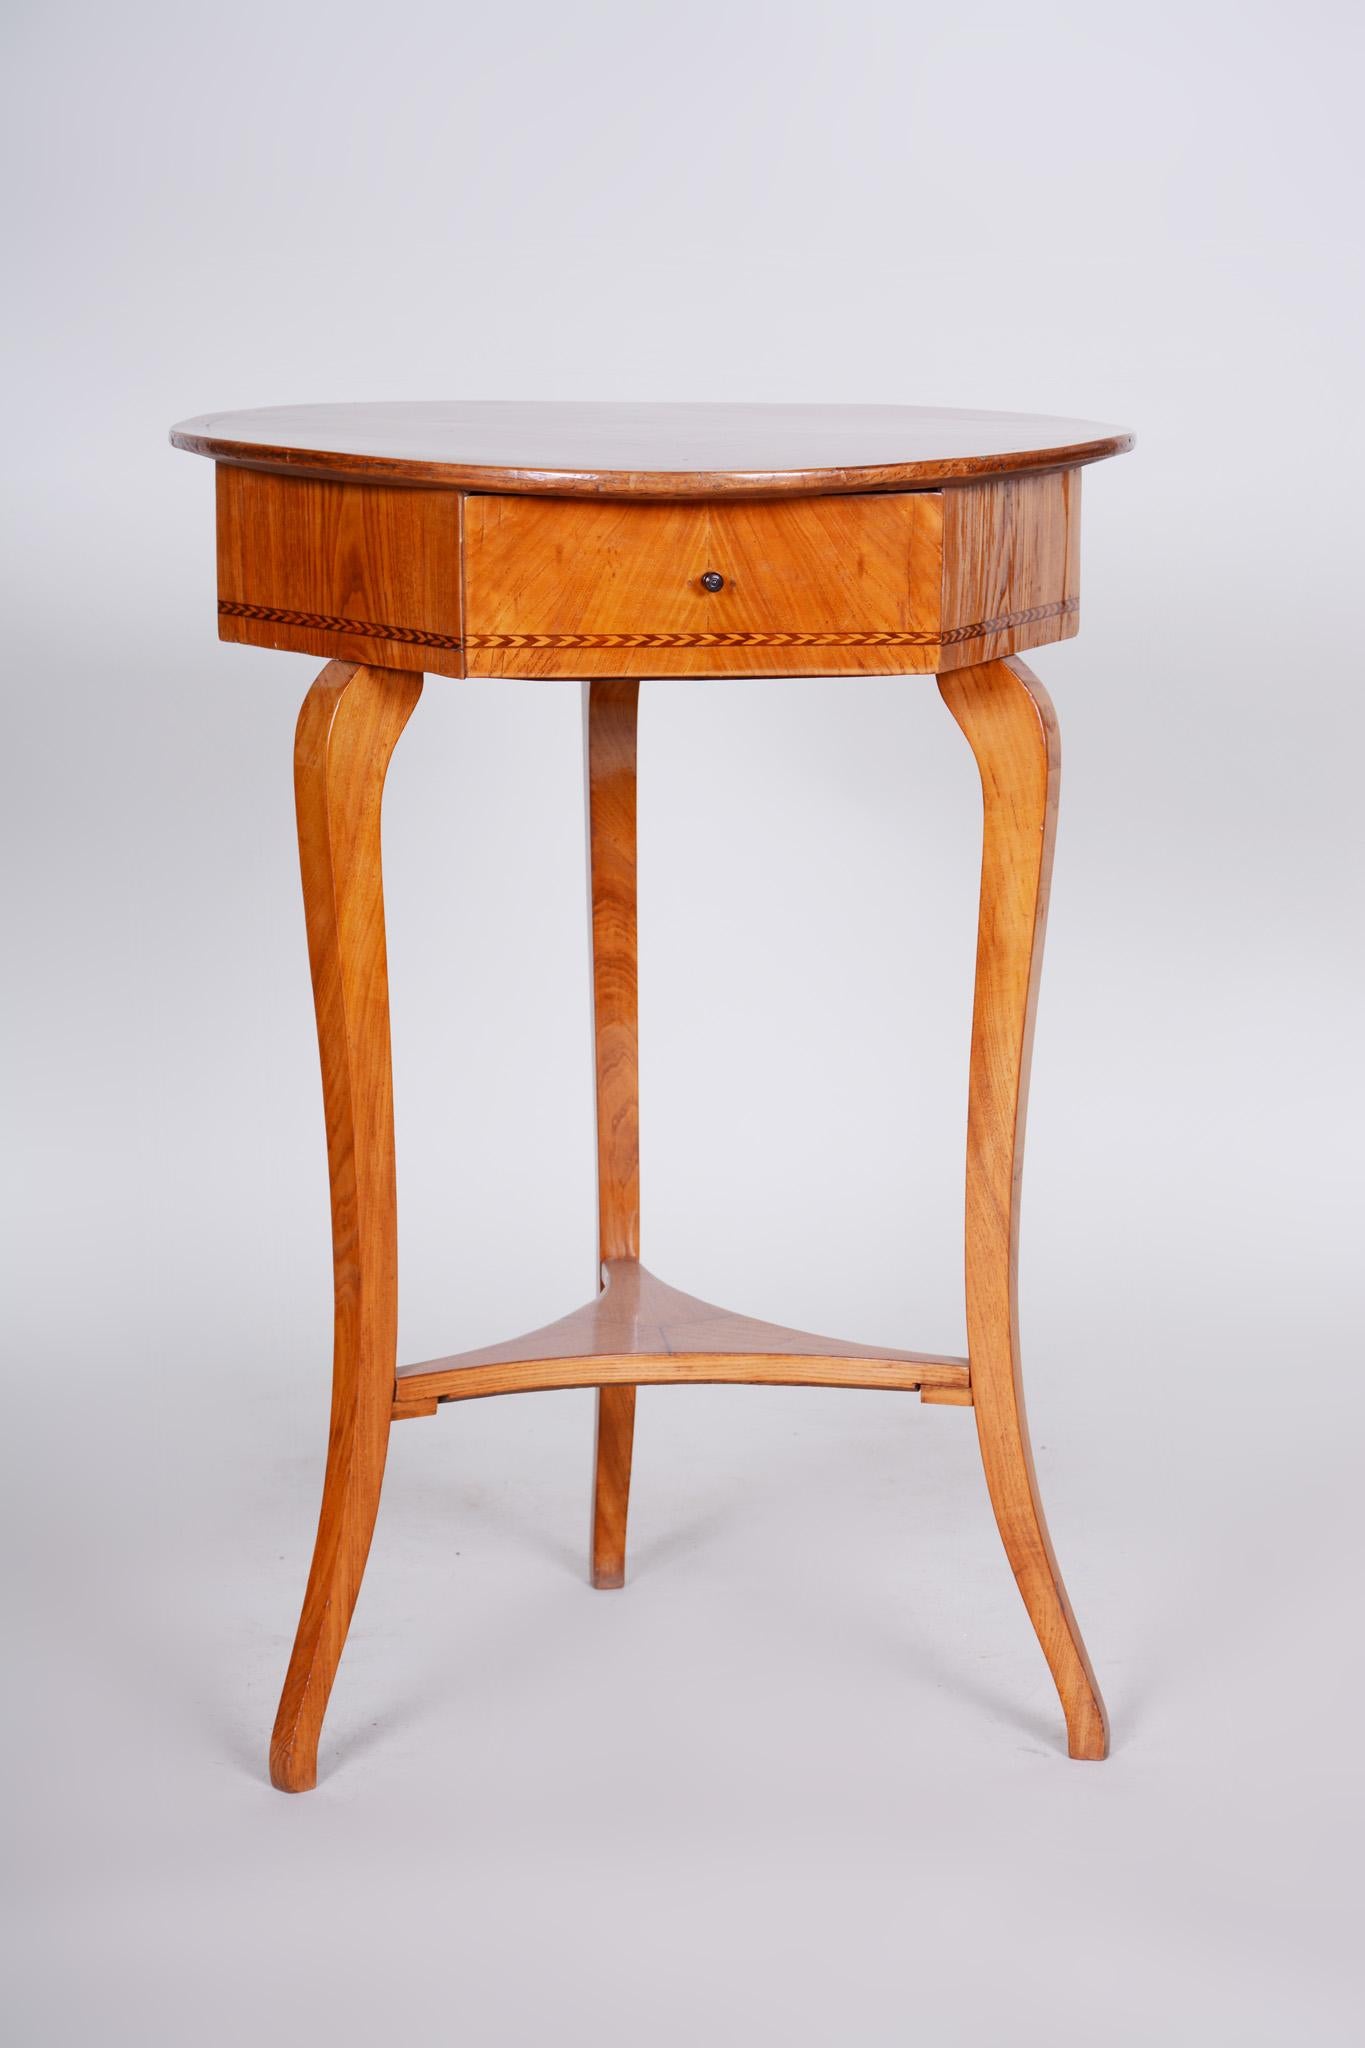 Biedermeier - Petite table classique.
Période : 1780-1839
MATERIAL : Orme
Source : Autriche (Vienne)
Polissage à la gomme-laque.